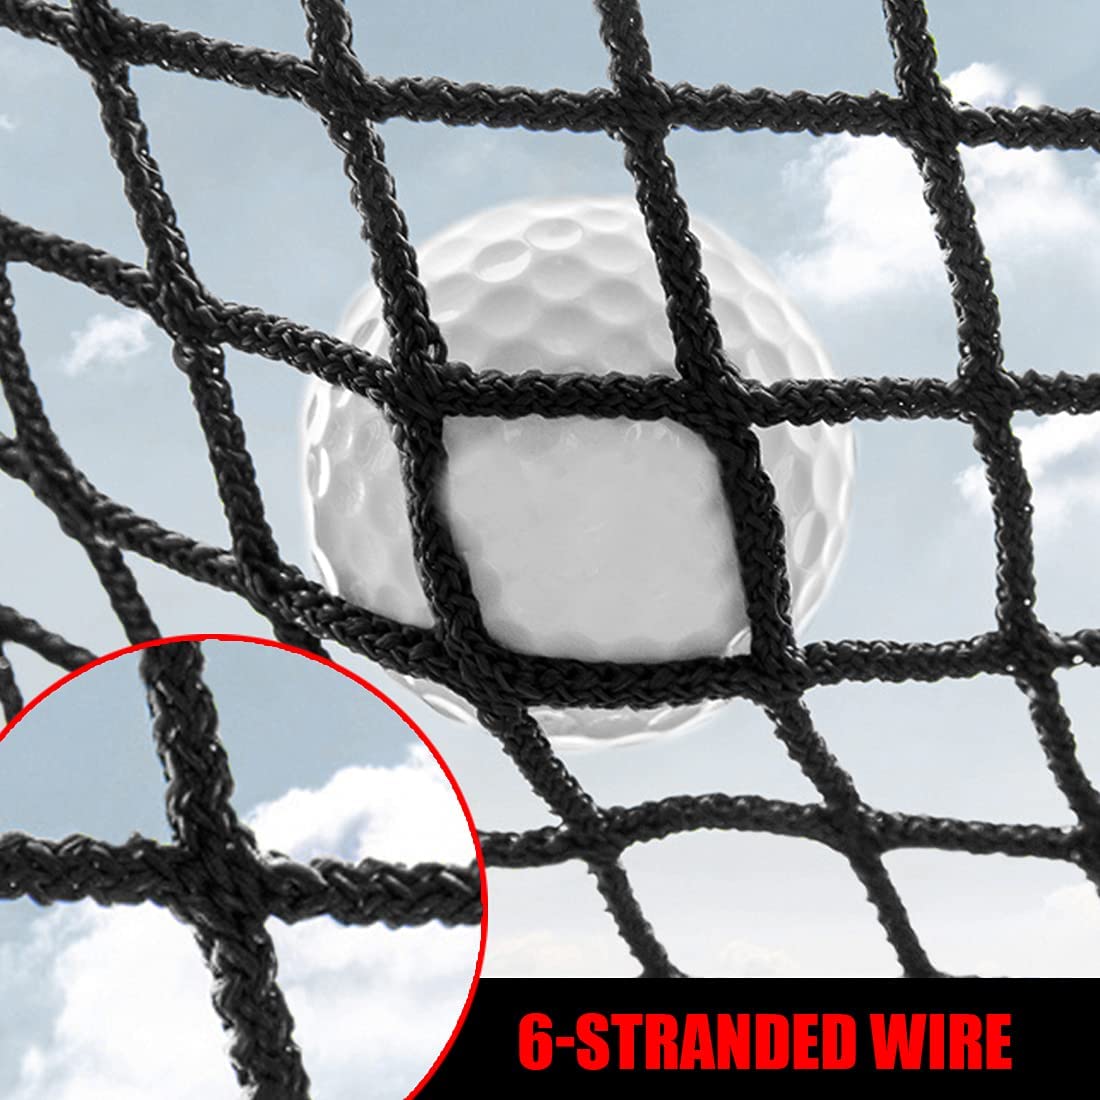 Golf Hitting Net Bundle - 10 Foot Net with 25x25 Hitting Golf Mat